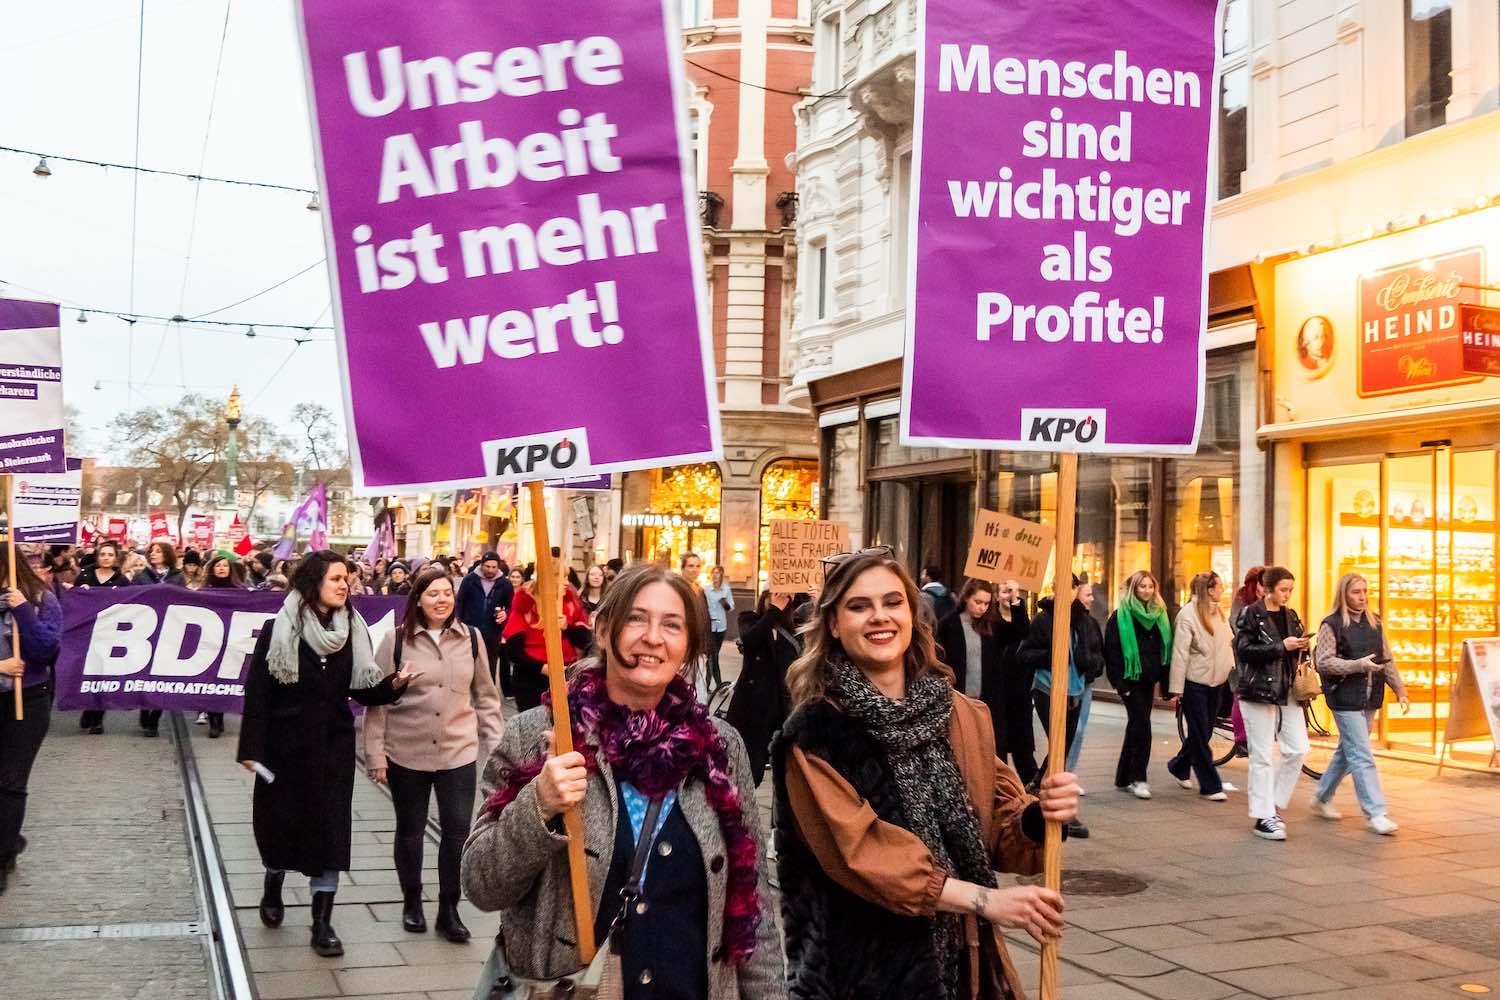 Demonstration am 8. März: »Unsere Arbeit ist mehr wert!«, »Menschen sind wichtiger als Profit!«